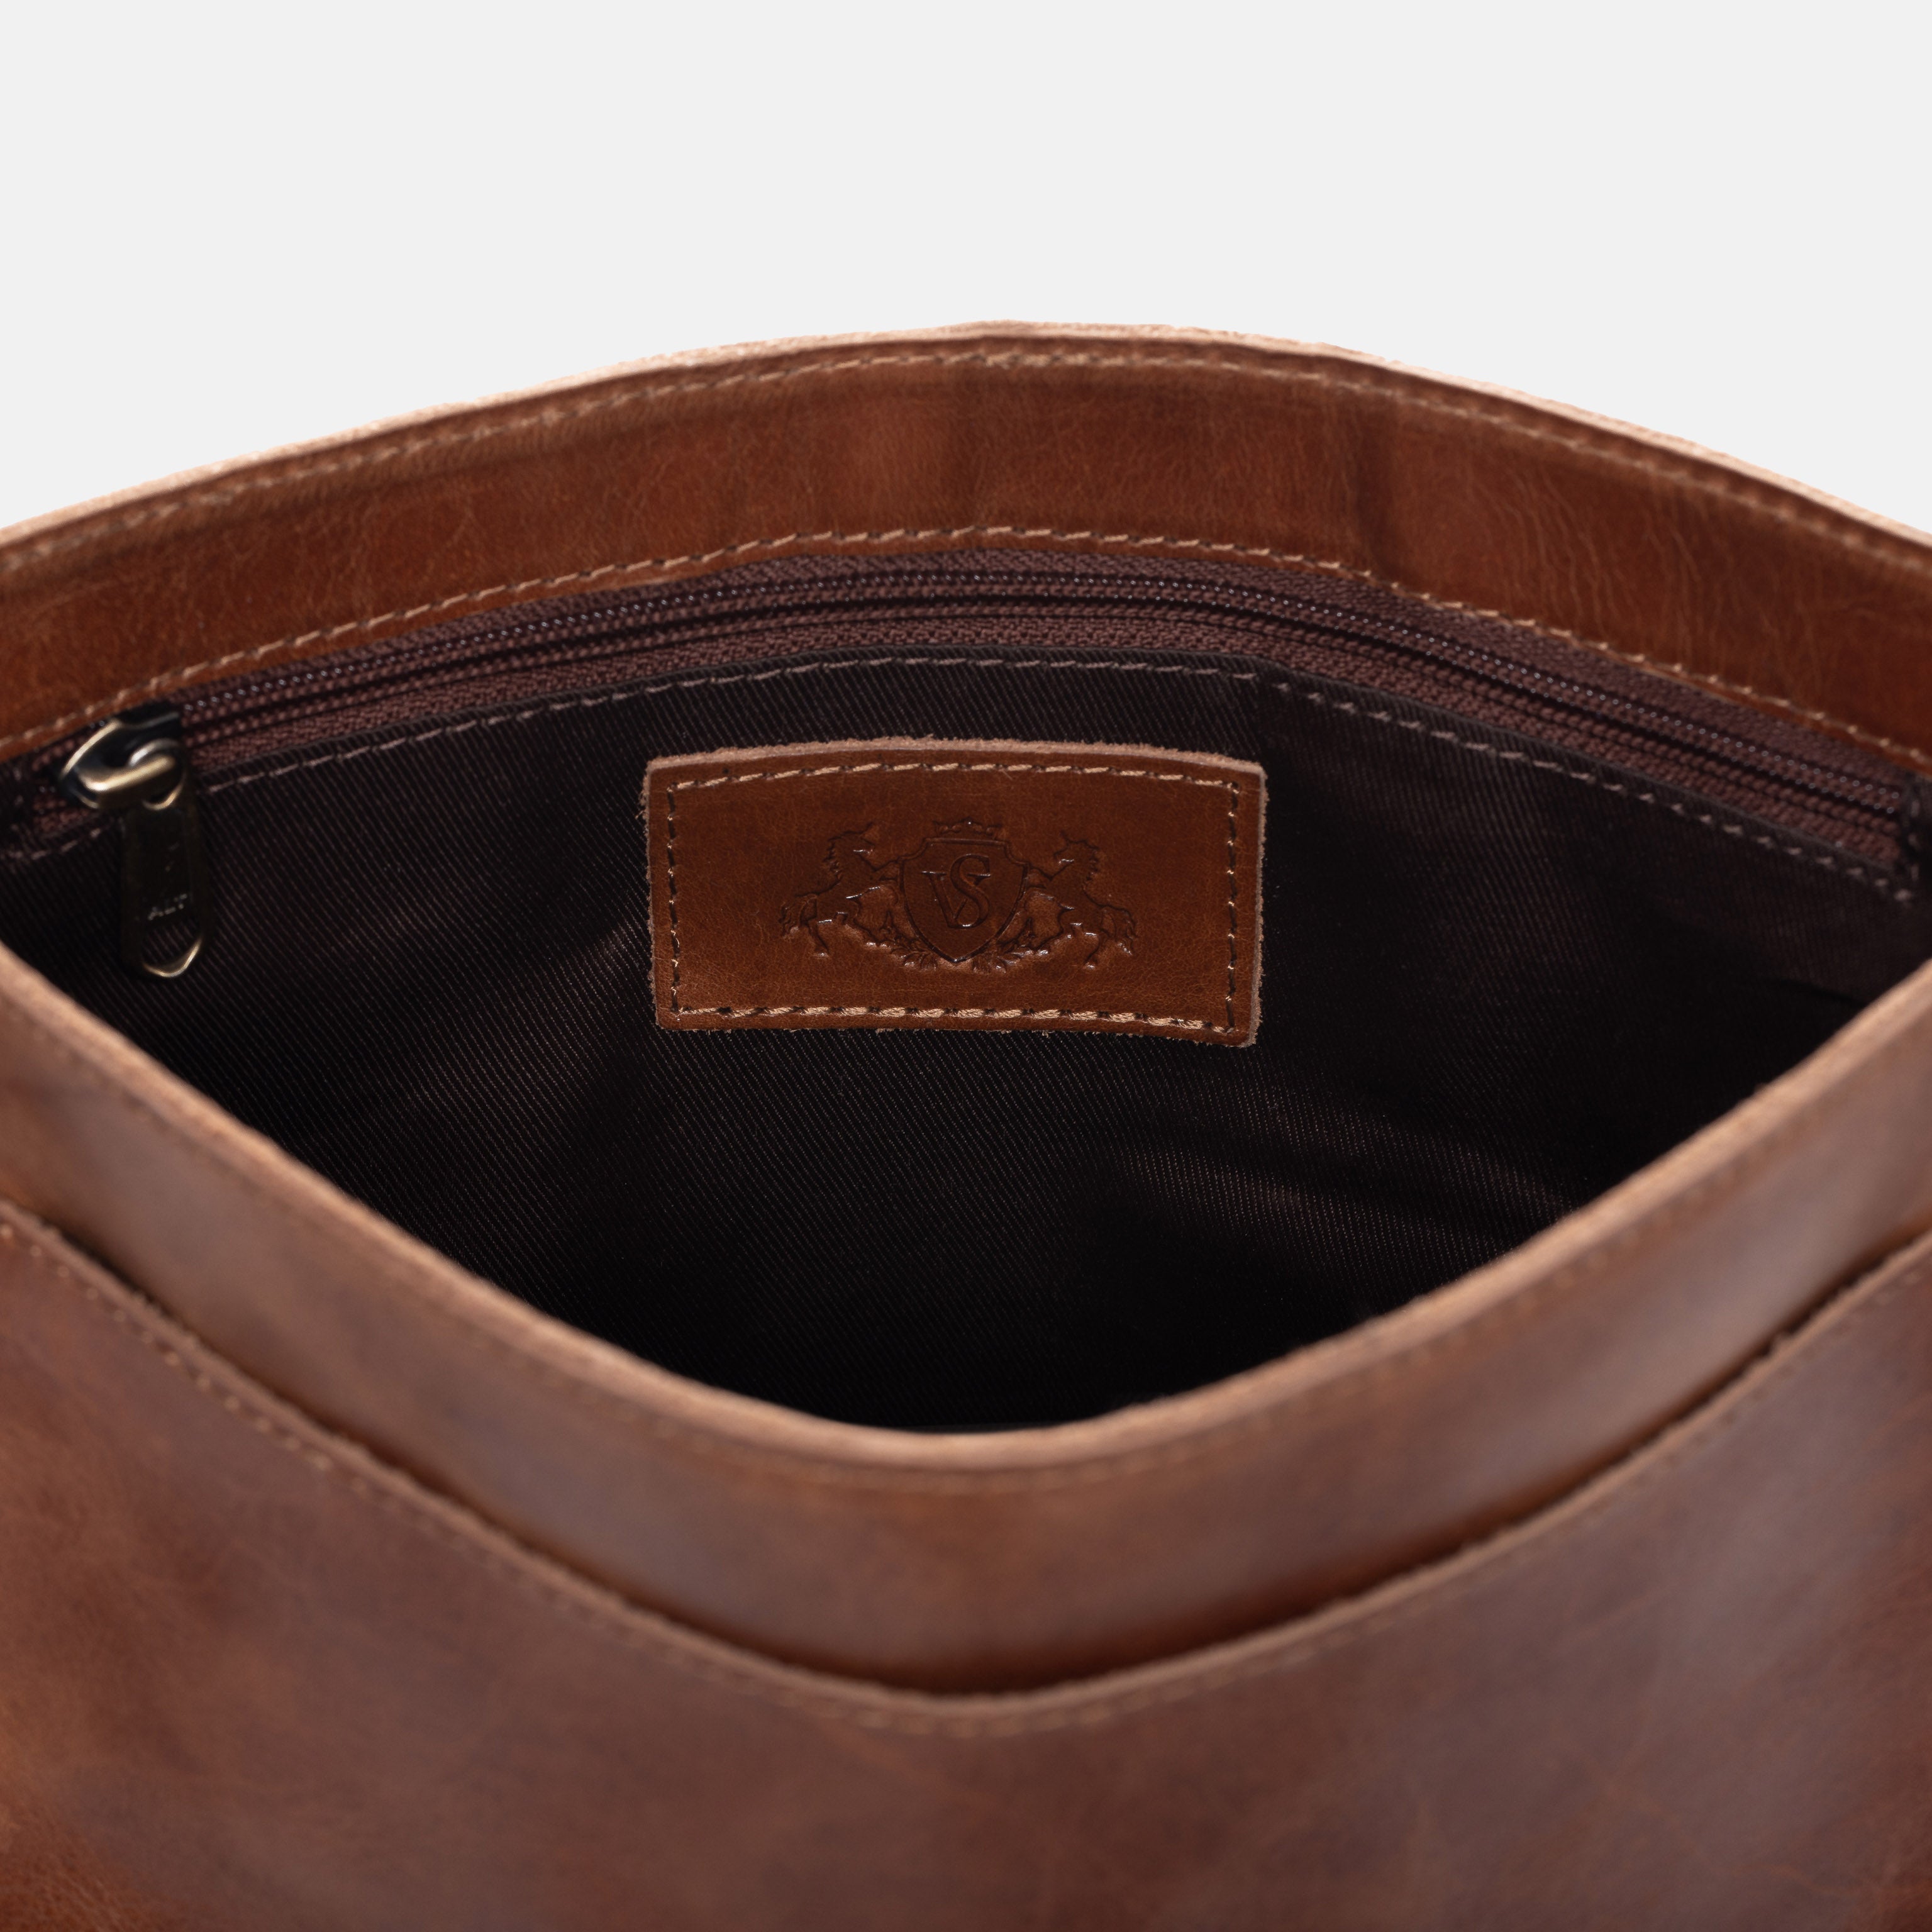 Shoulder bag YALE natural leather light brown